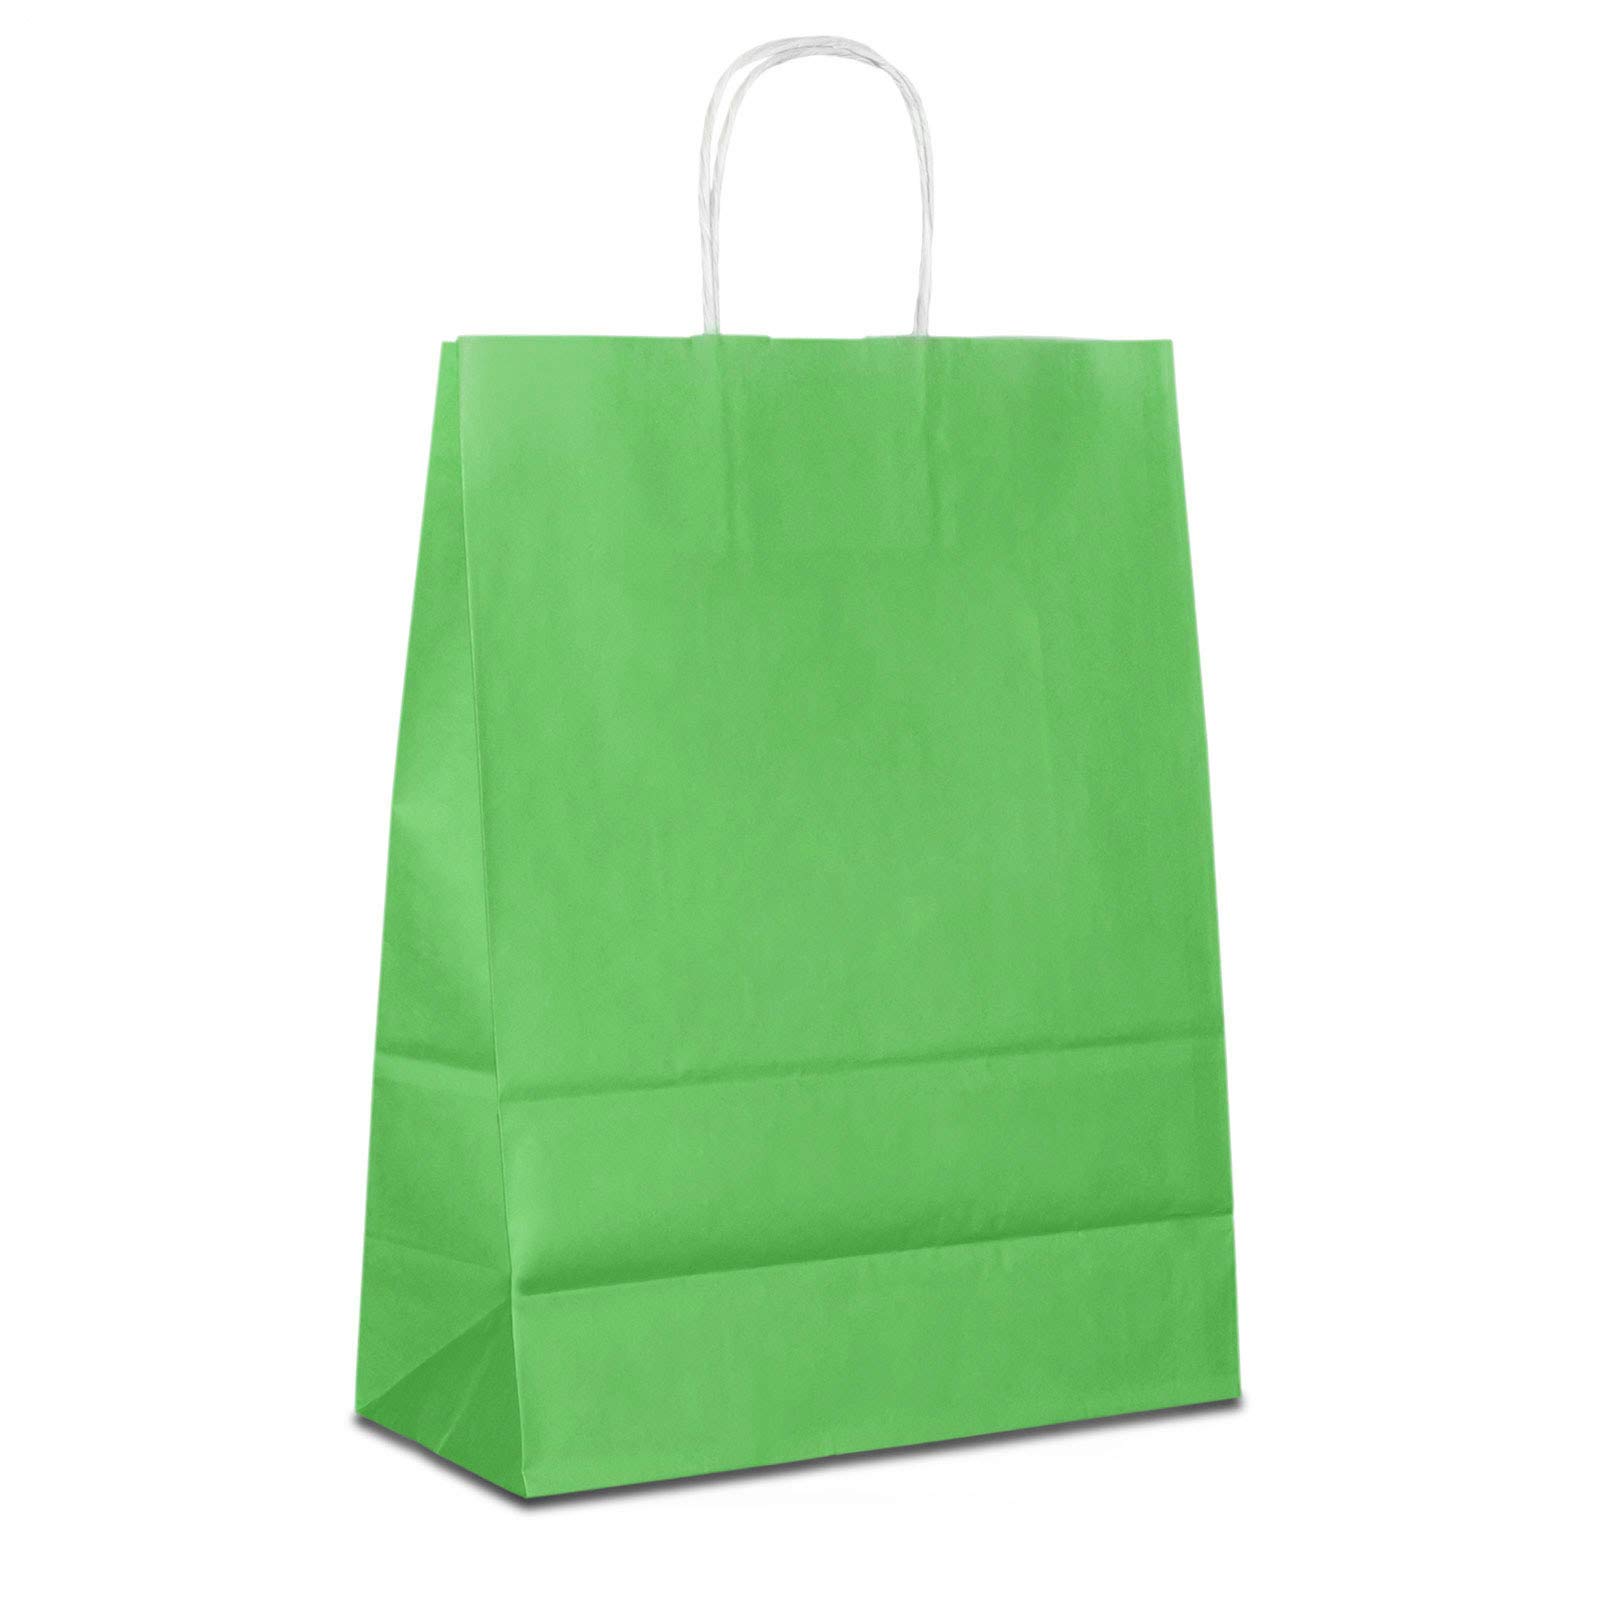 Papiertüten grün mit Kordel-Henkel I 50 Stk. 32+12x41cm I Papiertragetasche für Einzelhandel, Weihnachten, Mitbringsel, TO-GO I Geschenktüten aus Kraftpapier I HUTNER